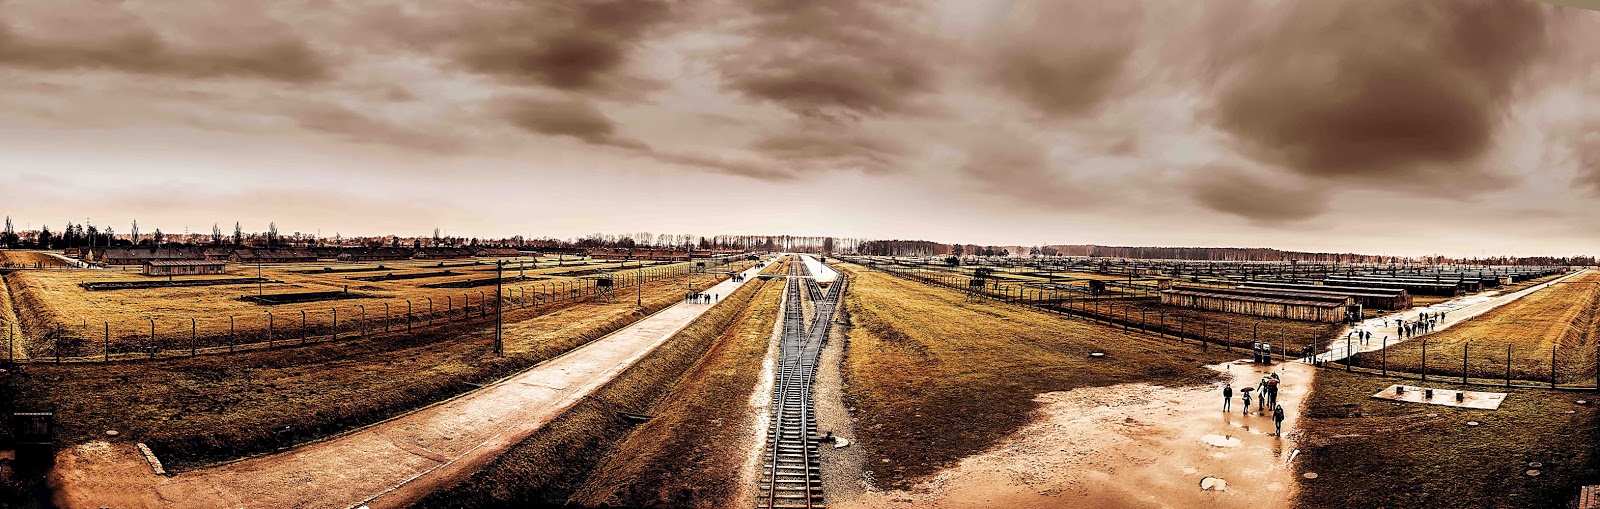 Auschwitz panorama view